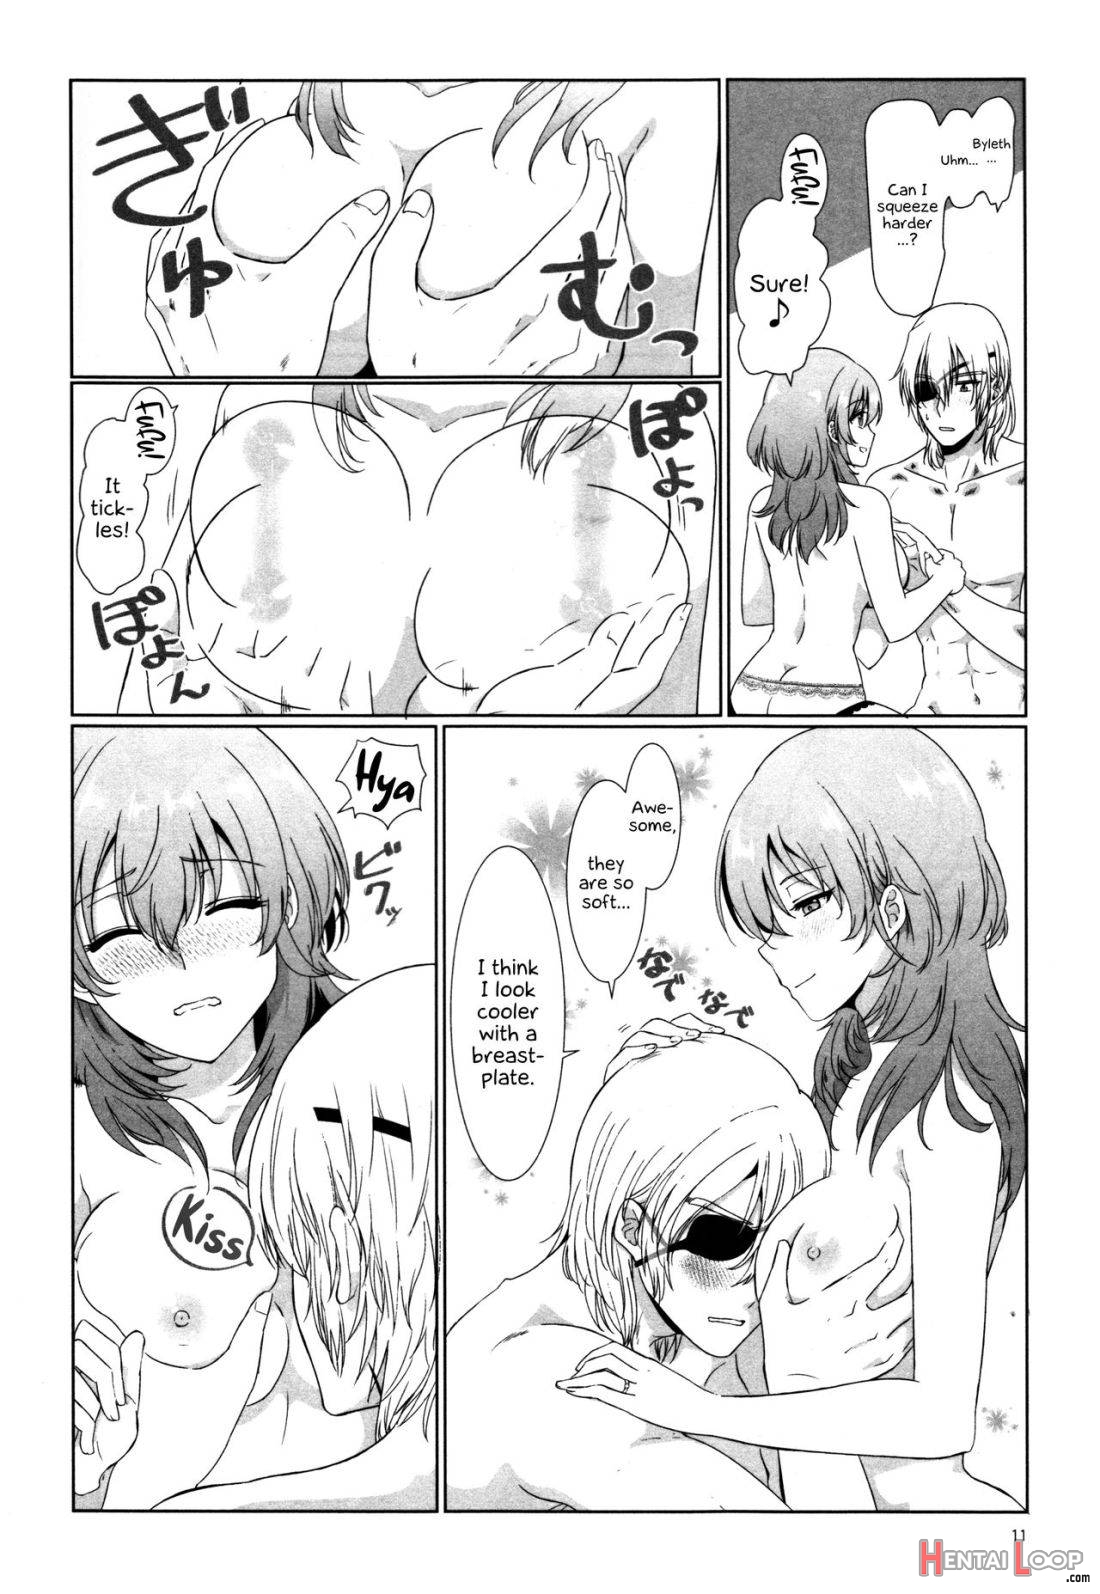 Shishi no Hanayome page 10